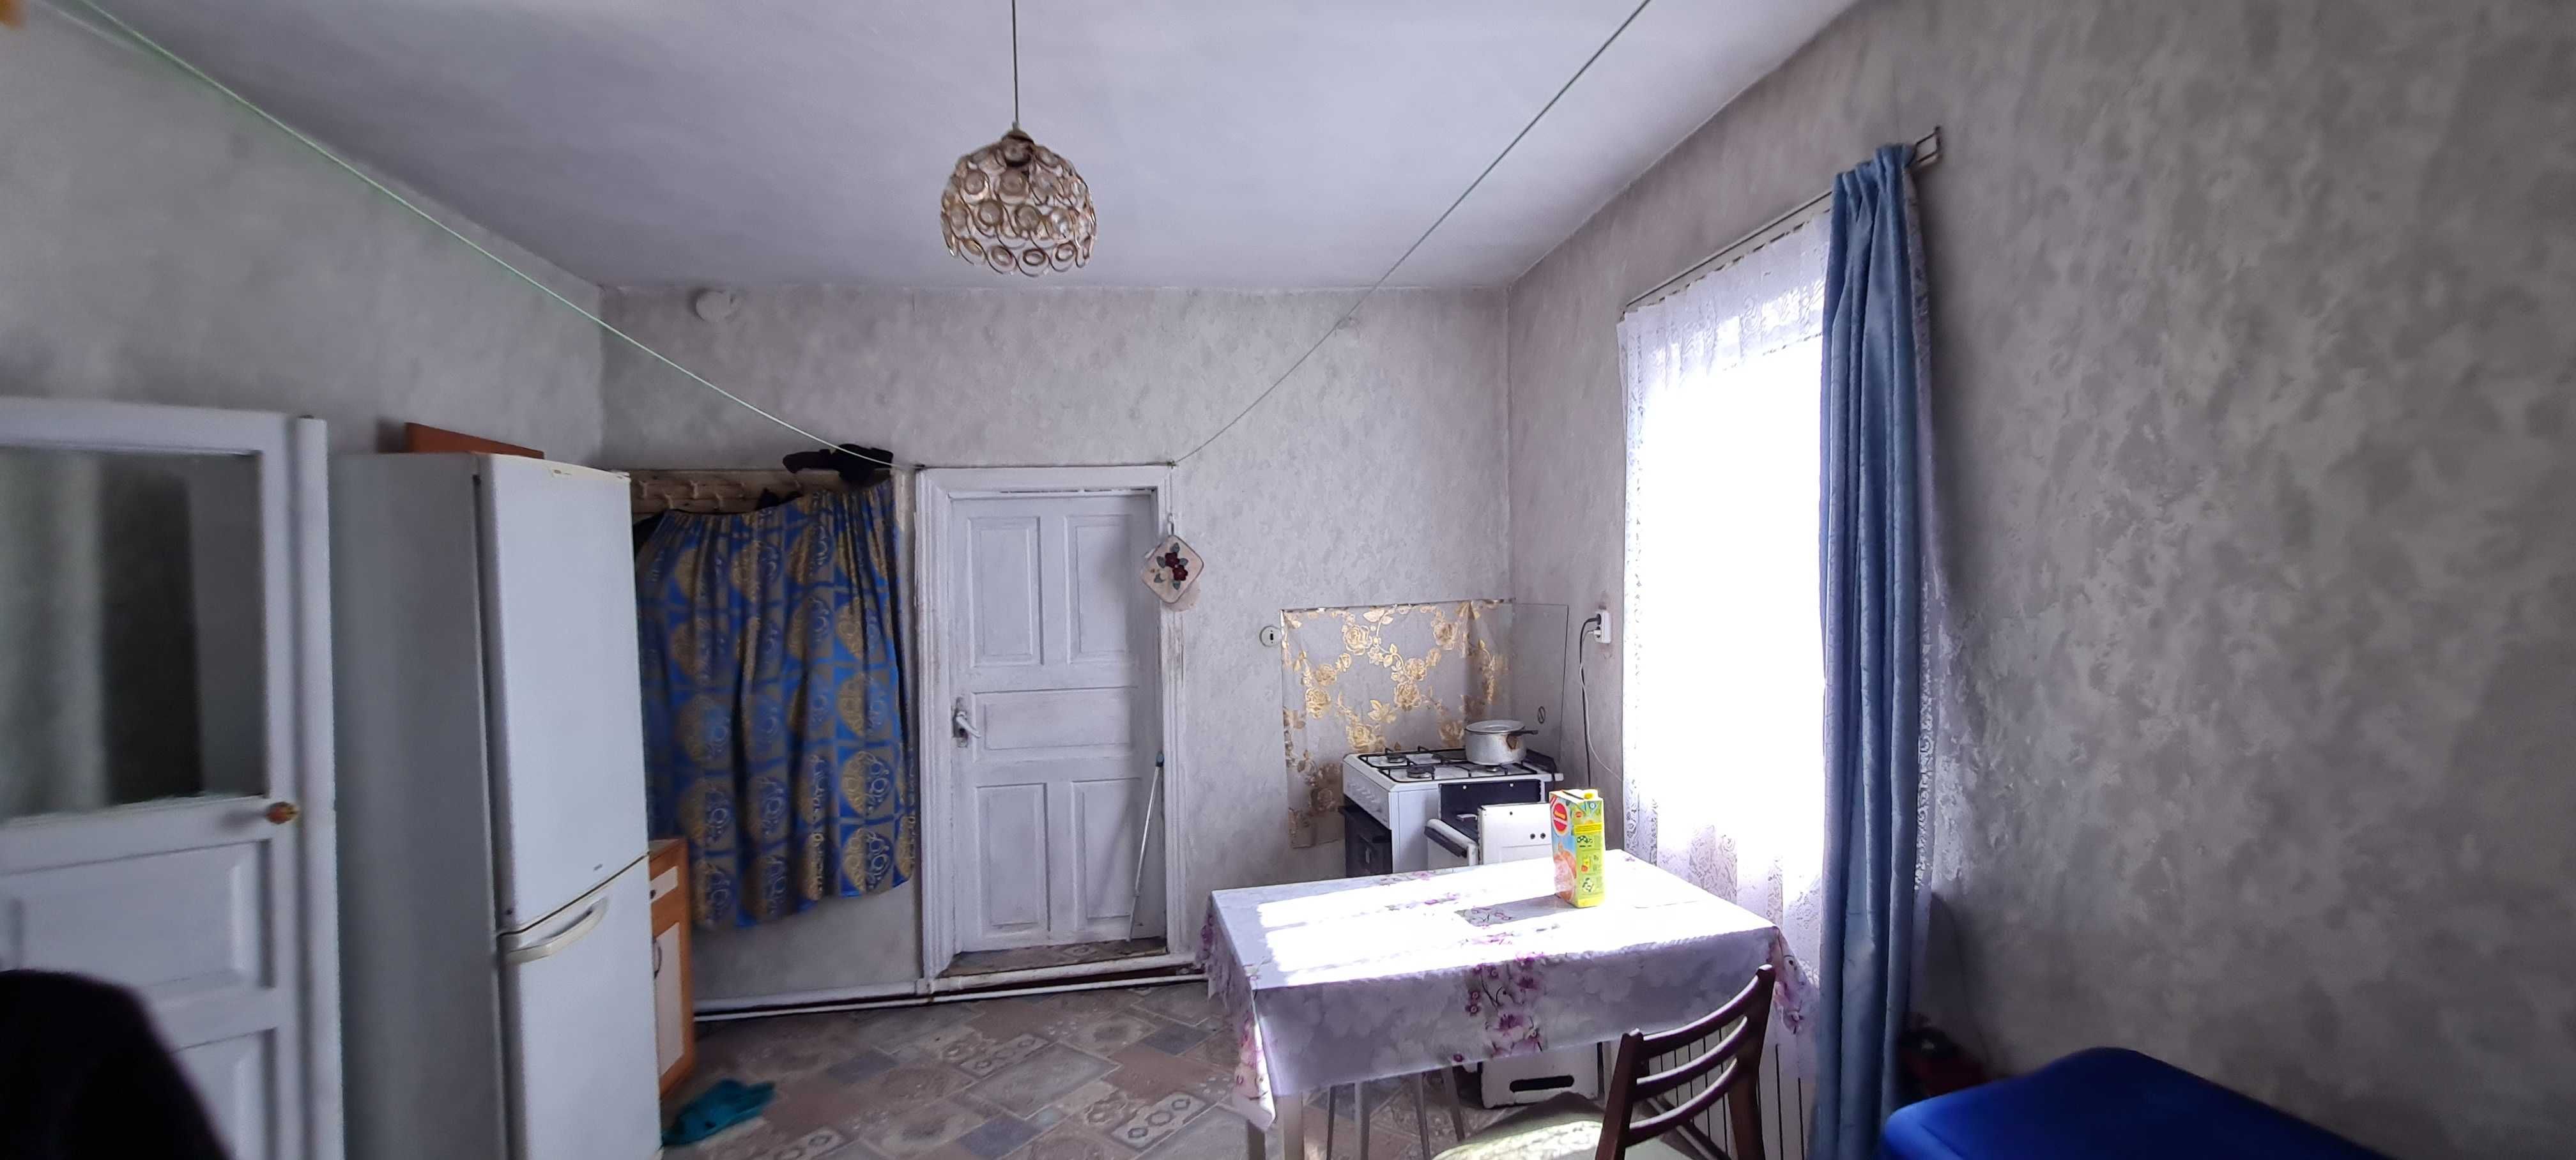 Дом 5-комнатный в Тихоновке (обмен на 2-х комнатную в Пришахтинске)